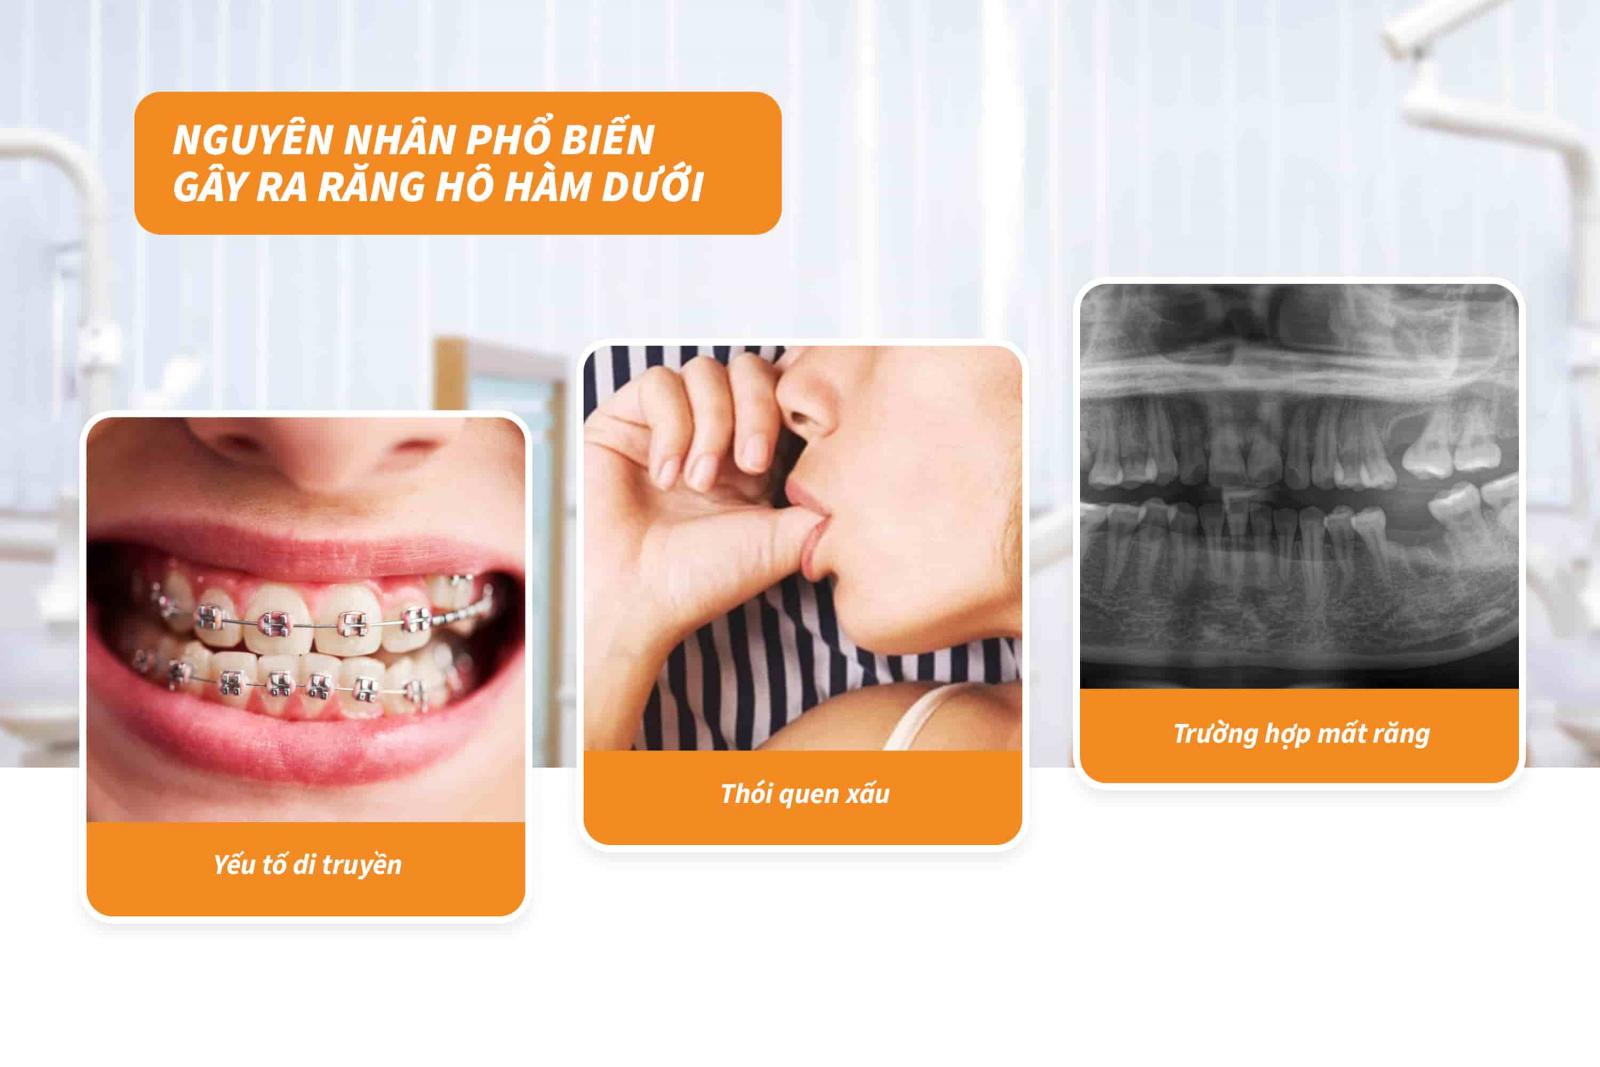 Nguyên nhân phổ biến gây ra răng hô hàm dưới